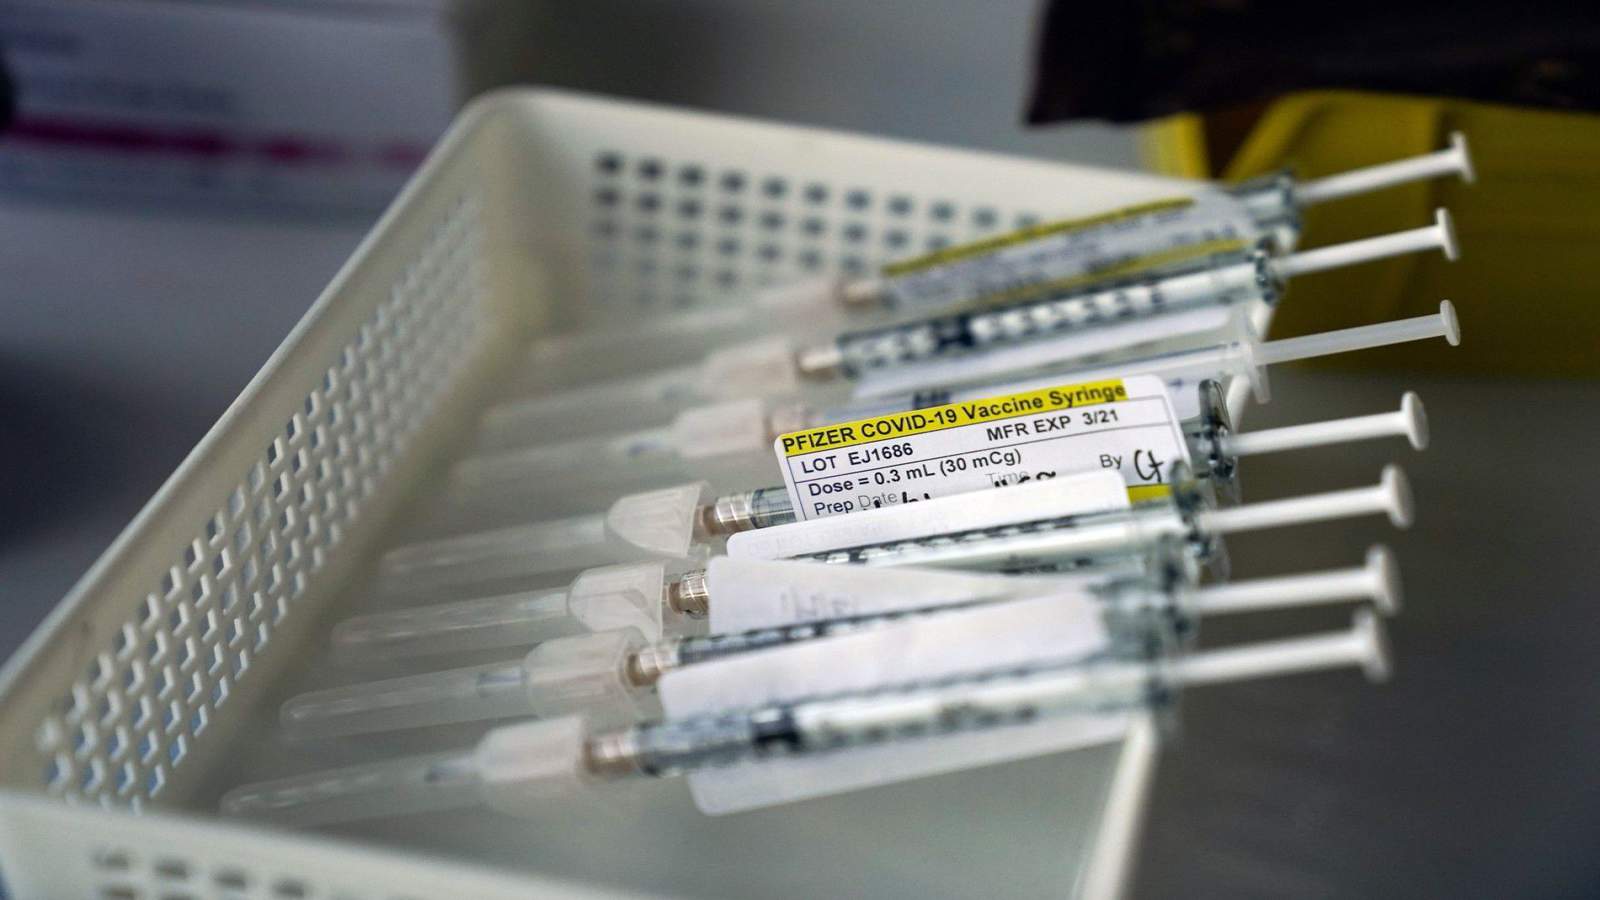 CDC data show Florida has 1 million unused doses of vaccine